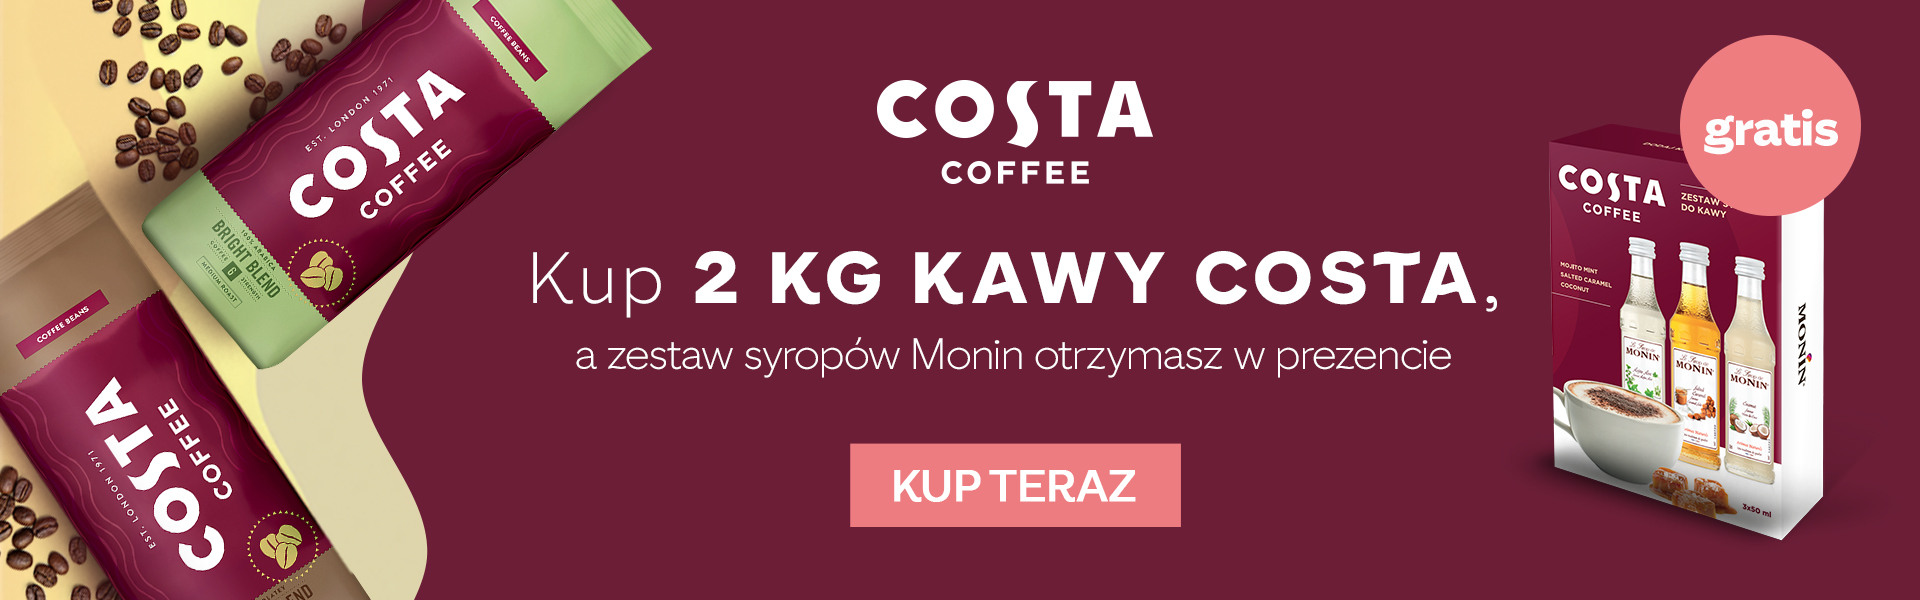 Kup minimum 2 kg kawy Costa Coffee, a zestaw Monin otrzymasz w prezencie